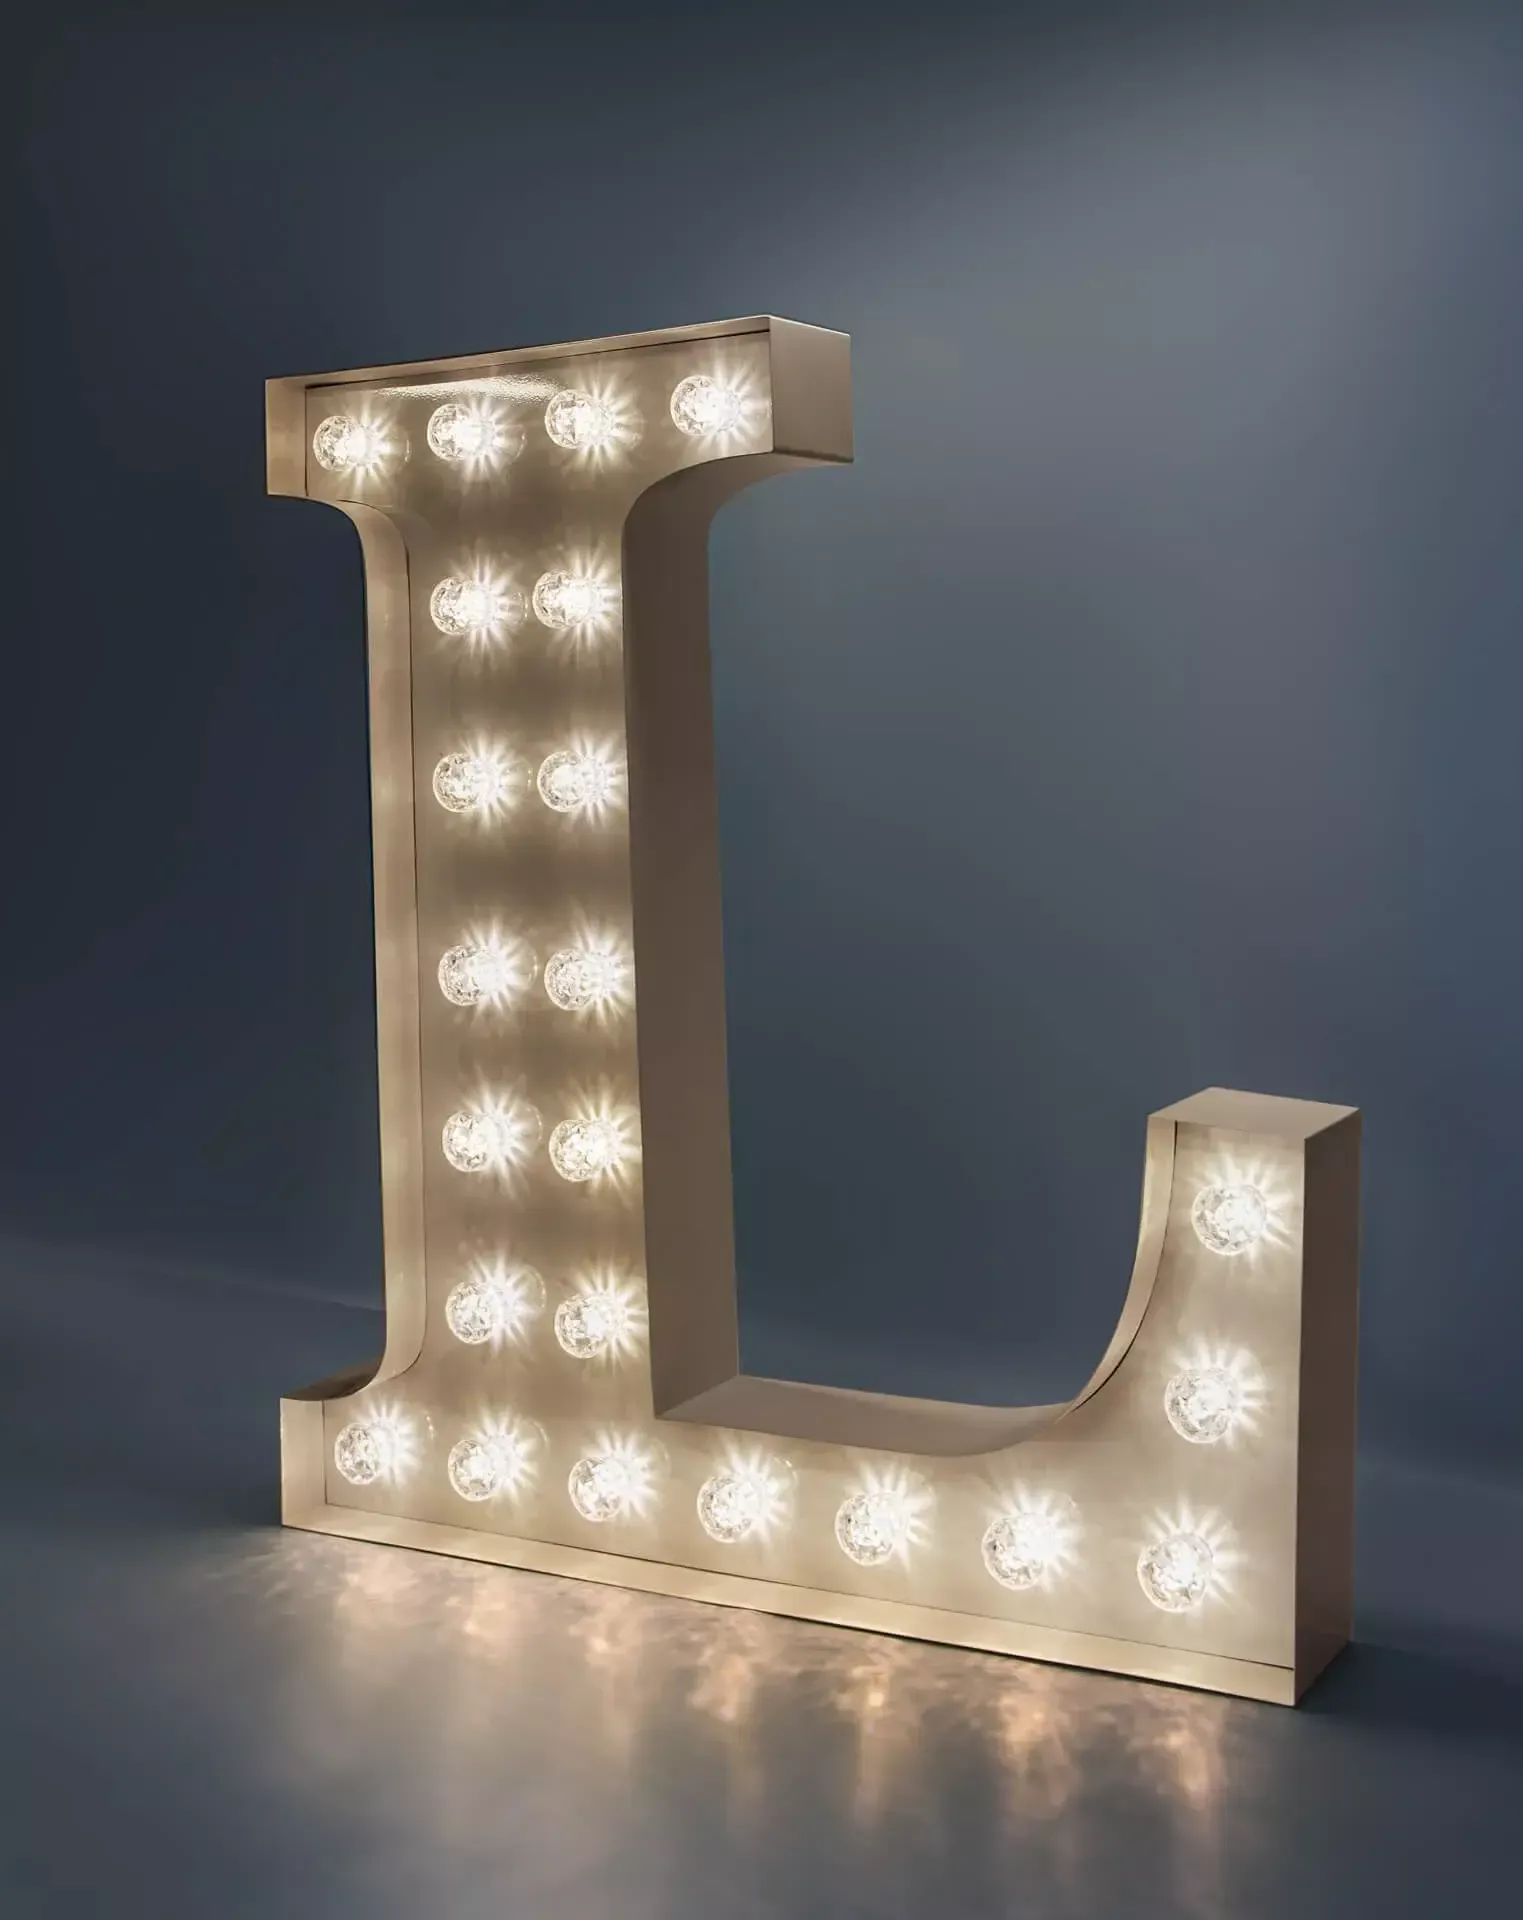 Lettre L - lettre lumineuse avec ampoules blanches